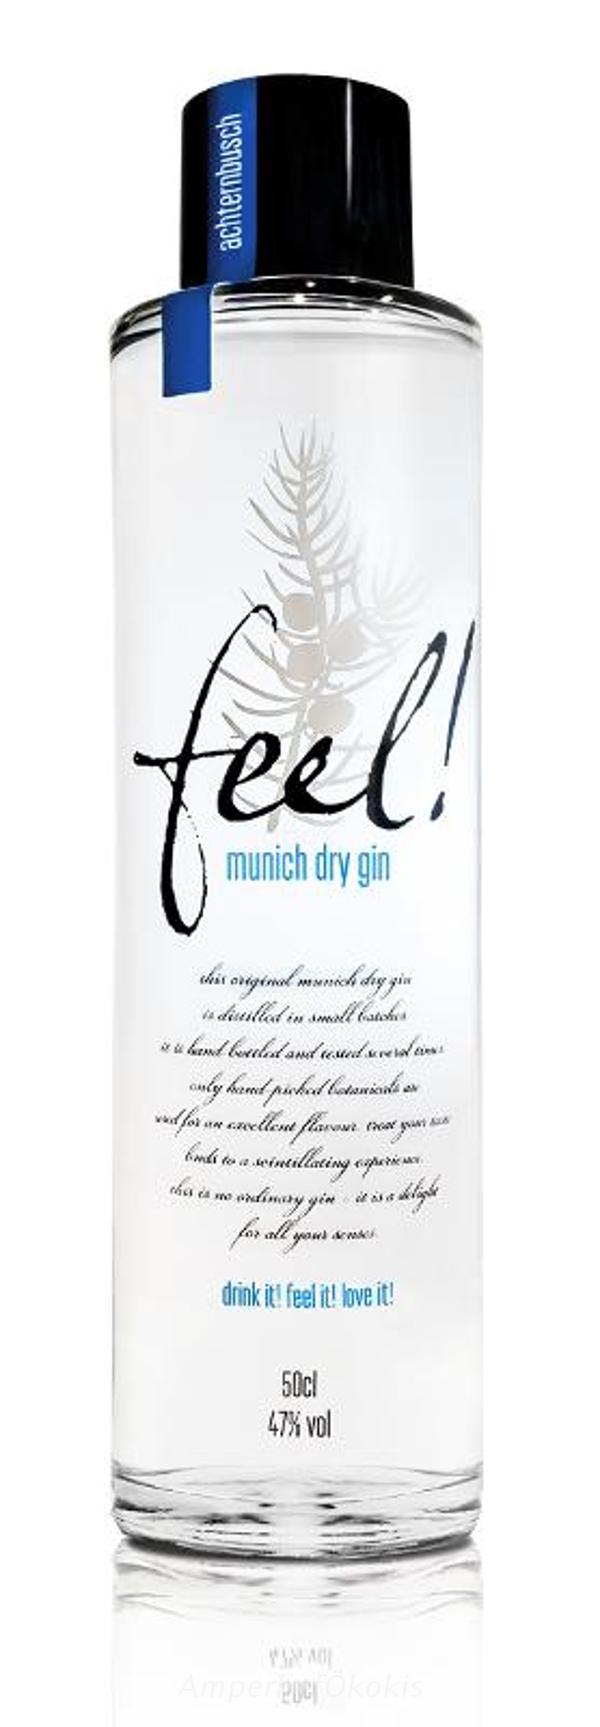 Produktfoto zu Feel Munich Dry Gin 0,5 l